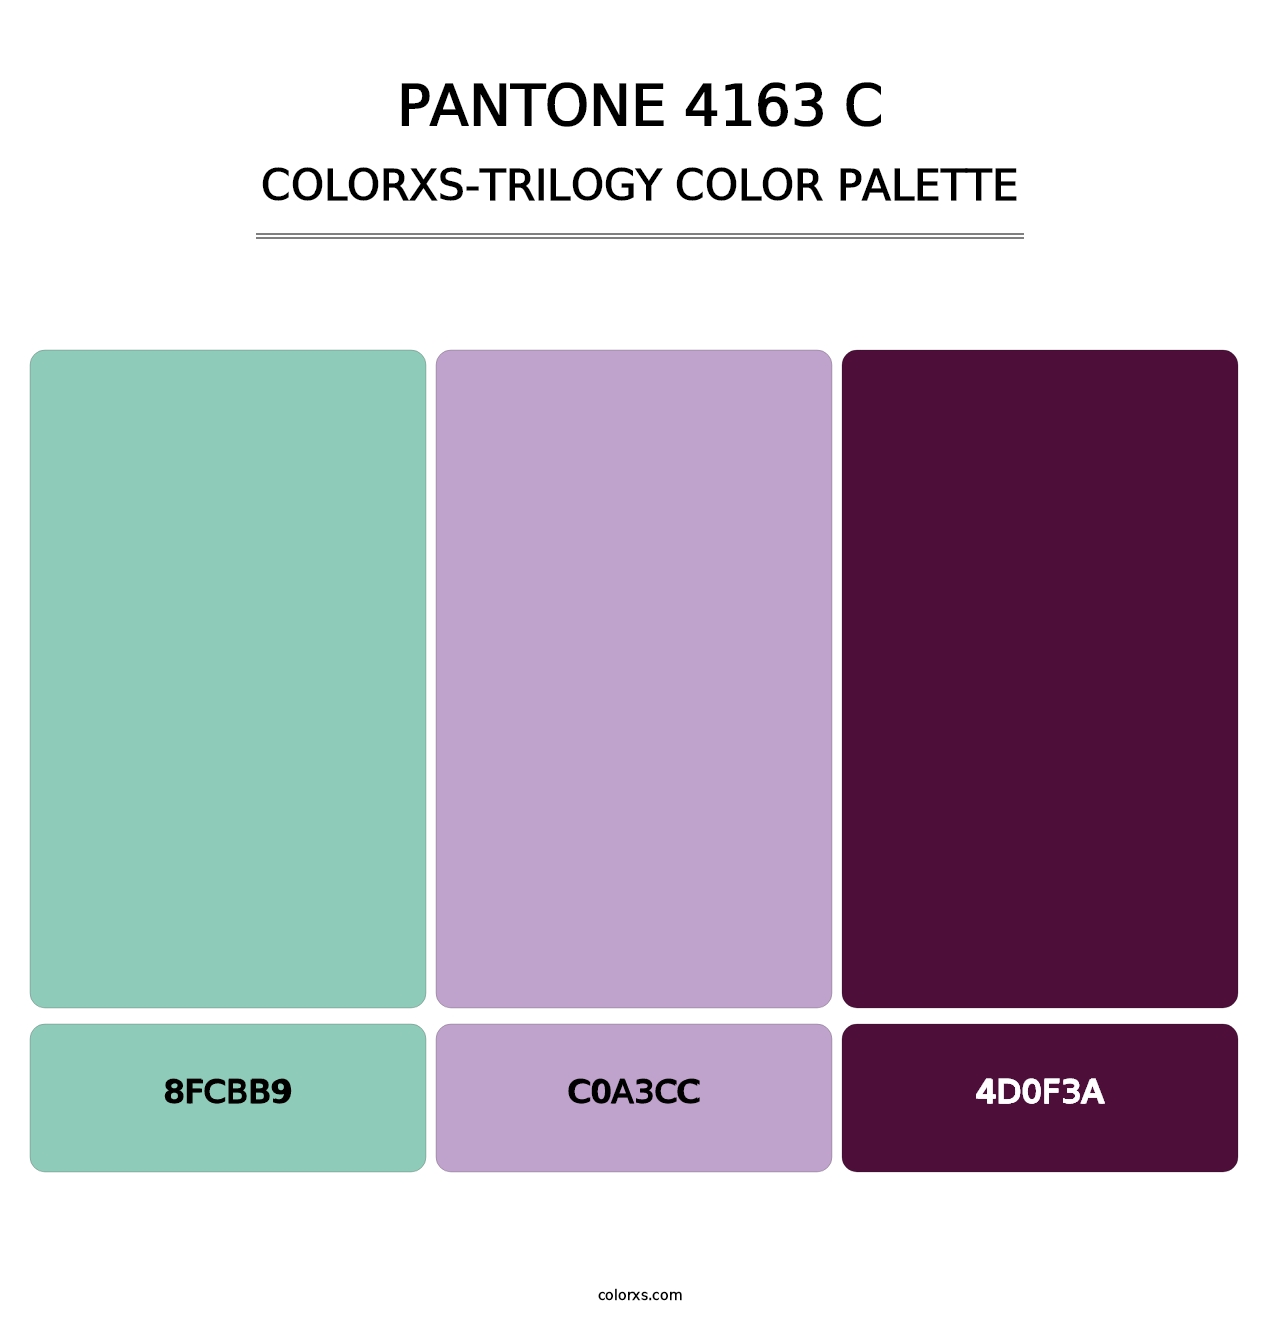 PANTONE 4163 C - Colorxs Trilogy Palette